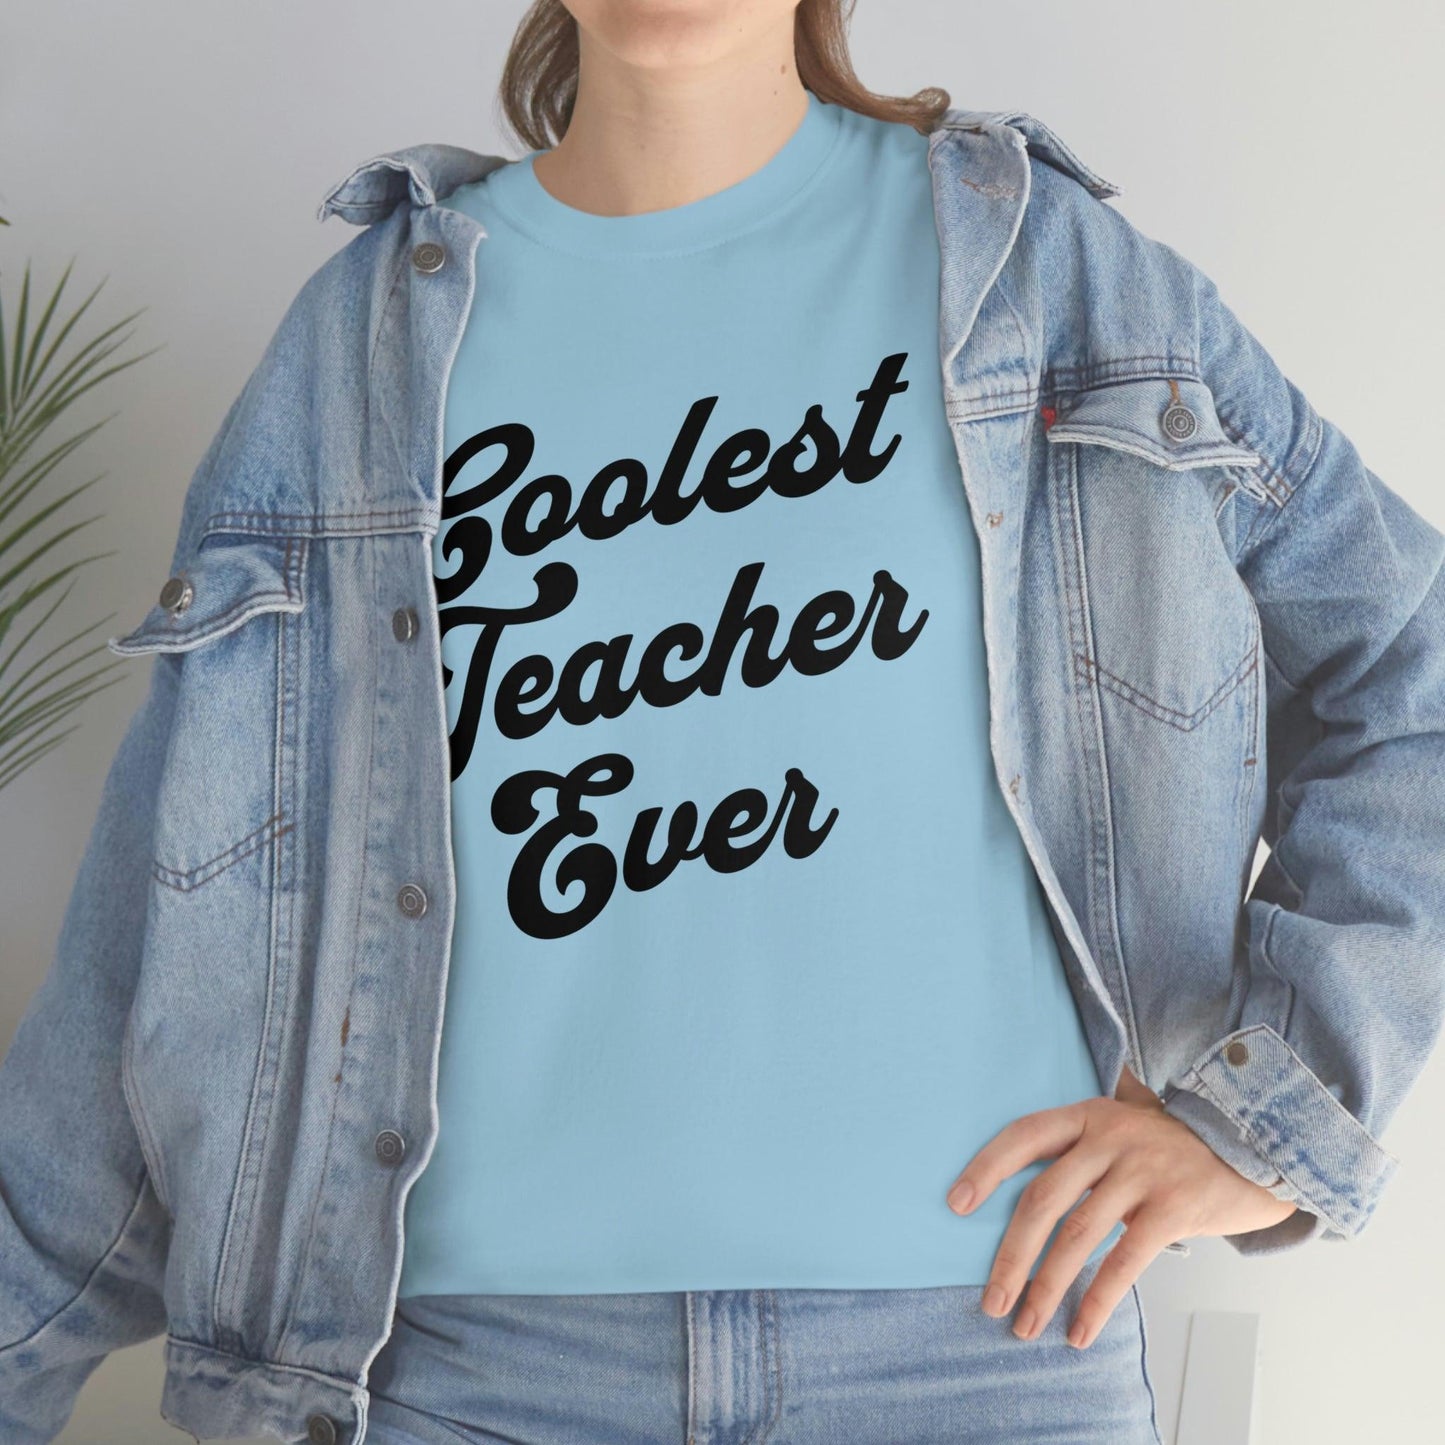 Coolest Teacher Ever Shirt - Giftsmojo